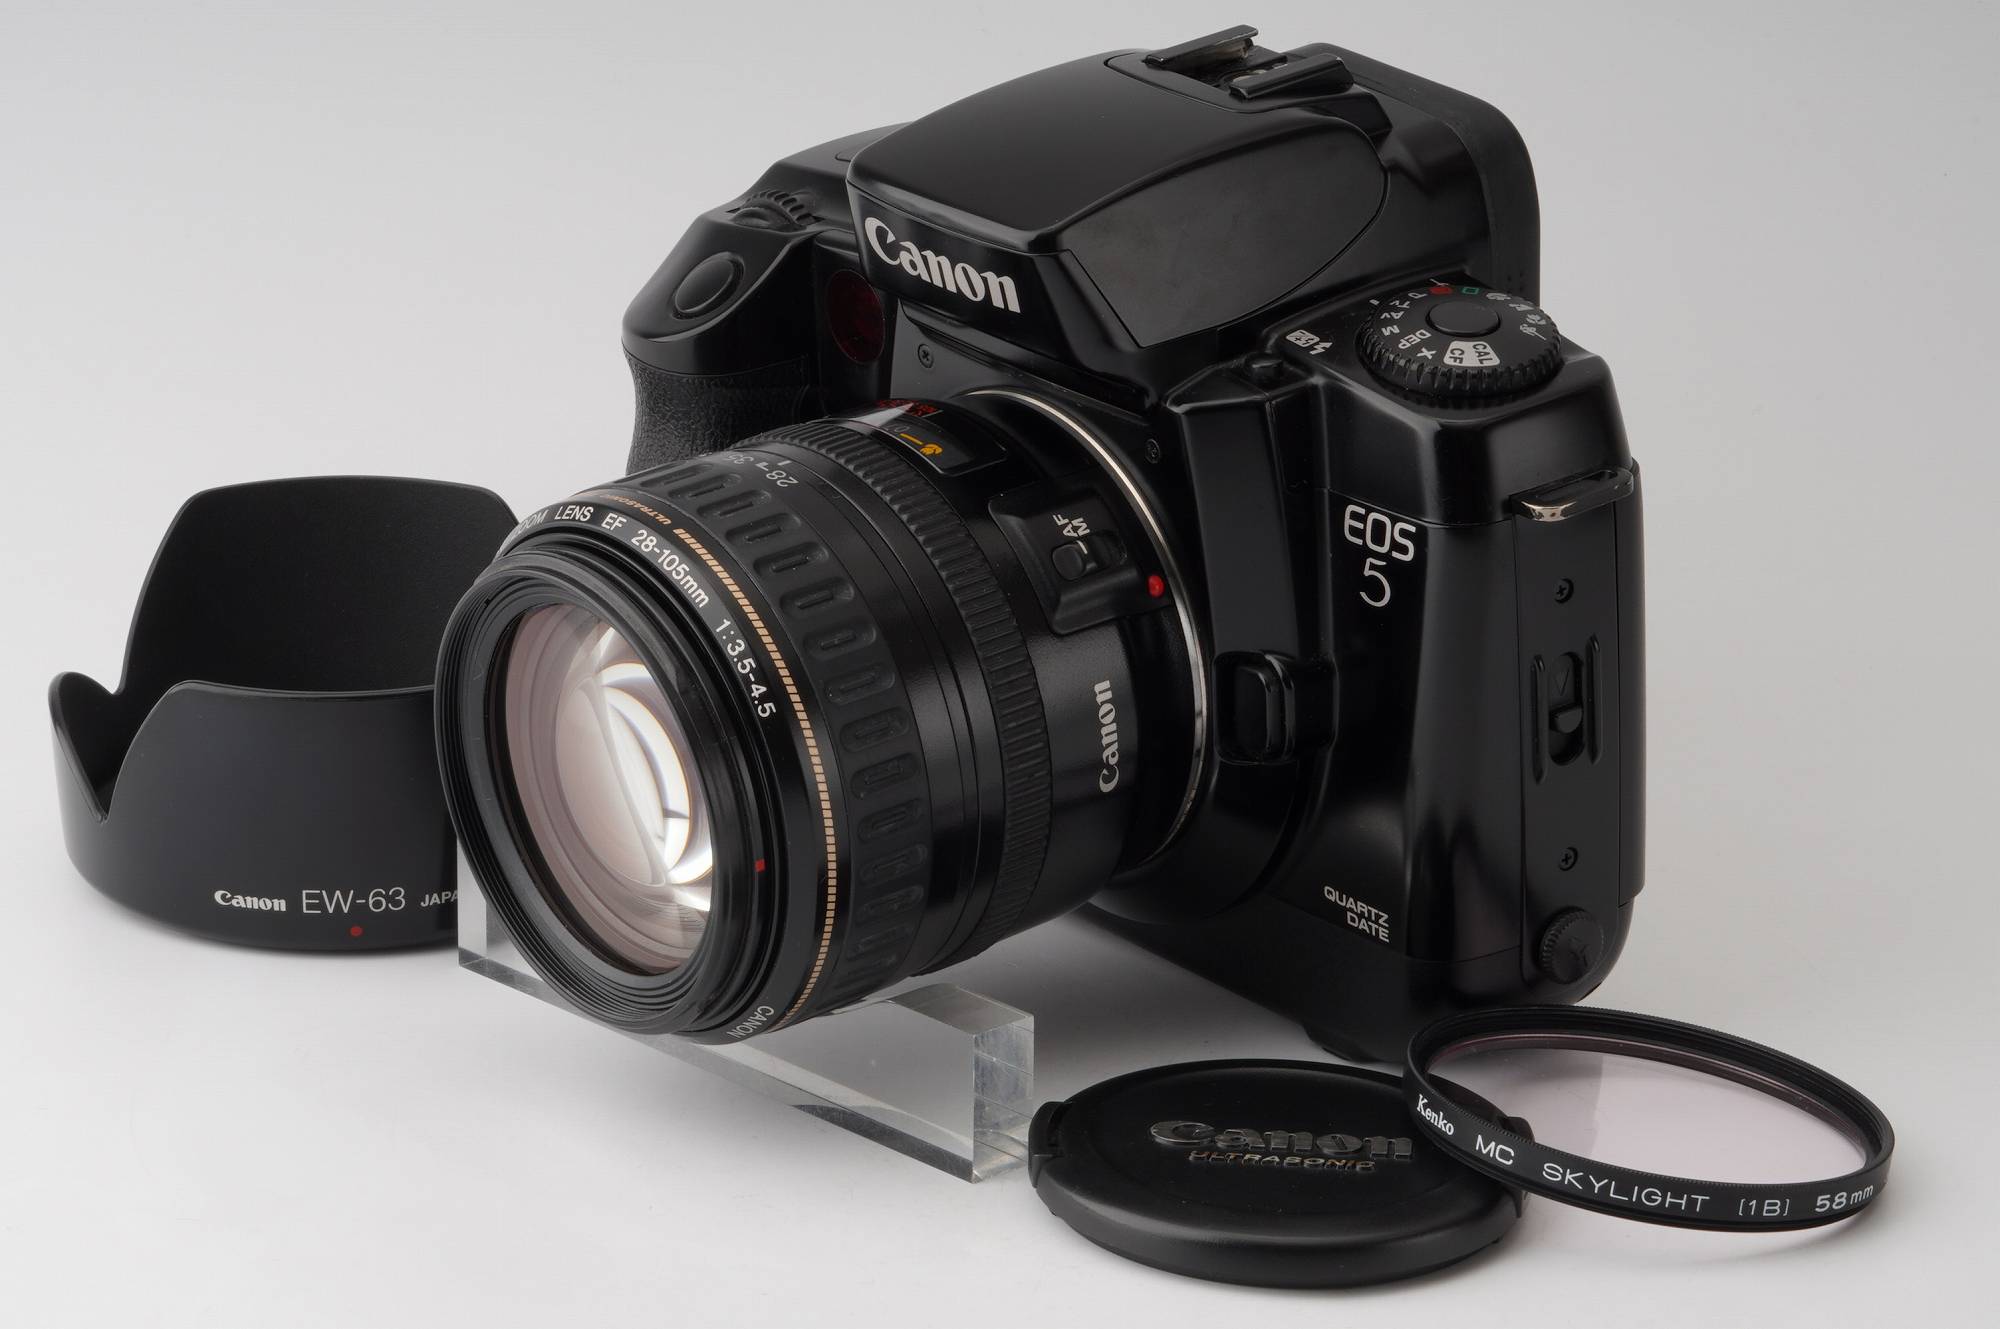 Canon キャノン ZOOM EF 28-105mm 3.5-4.5 USM - レンズ(ズーム)